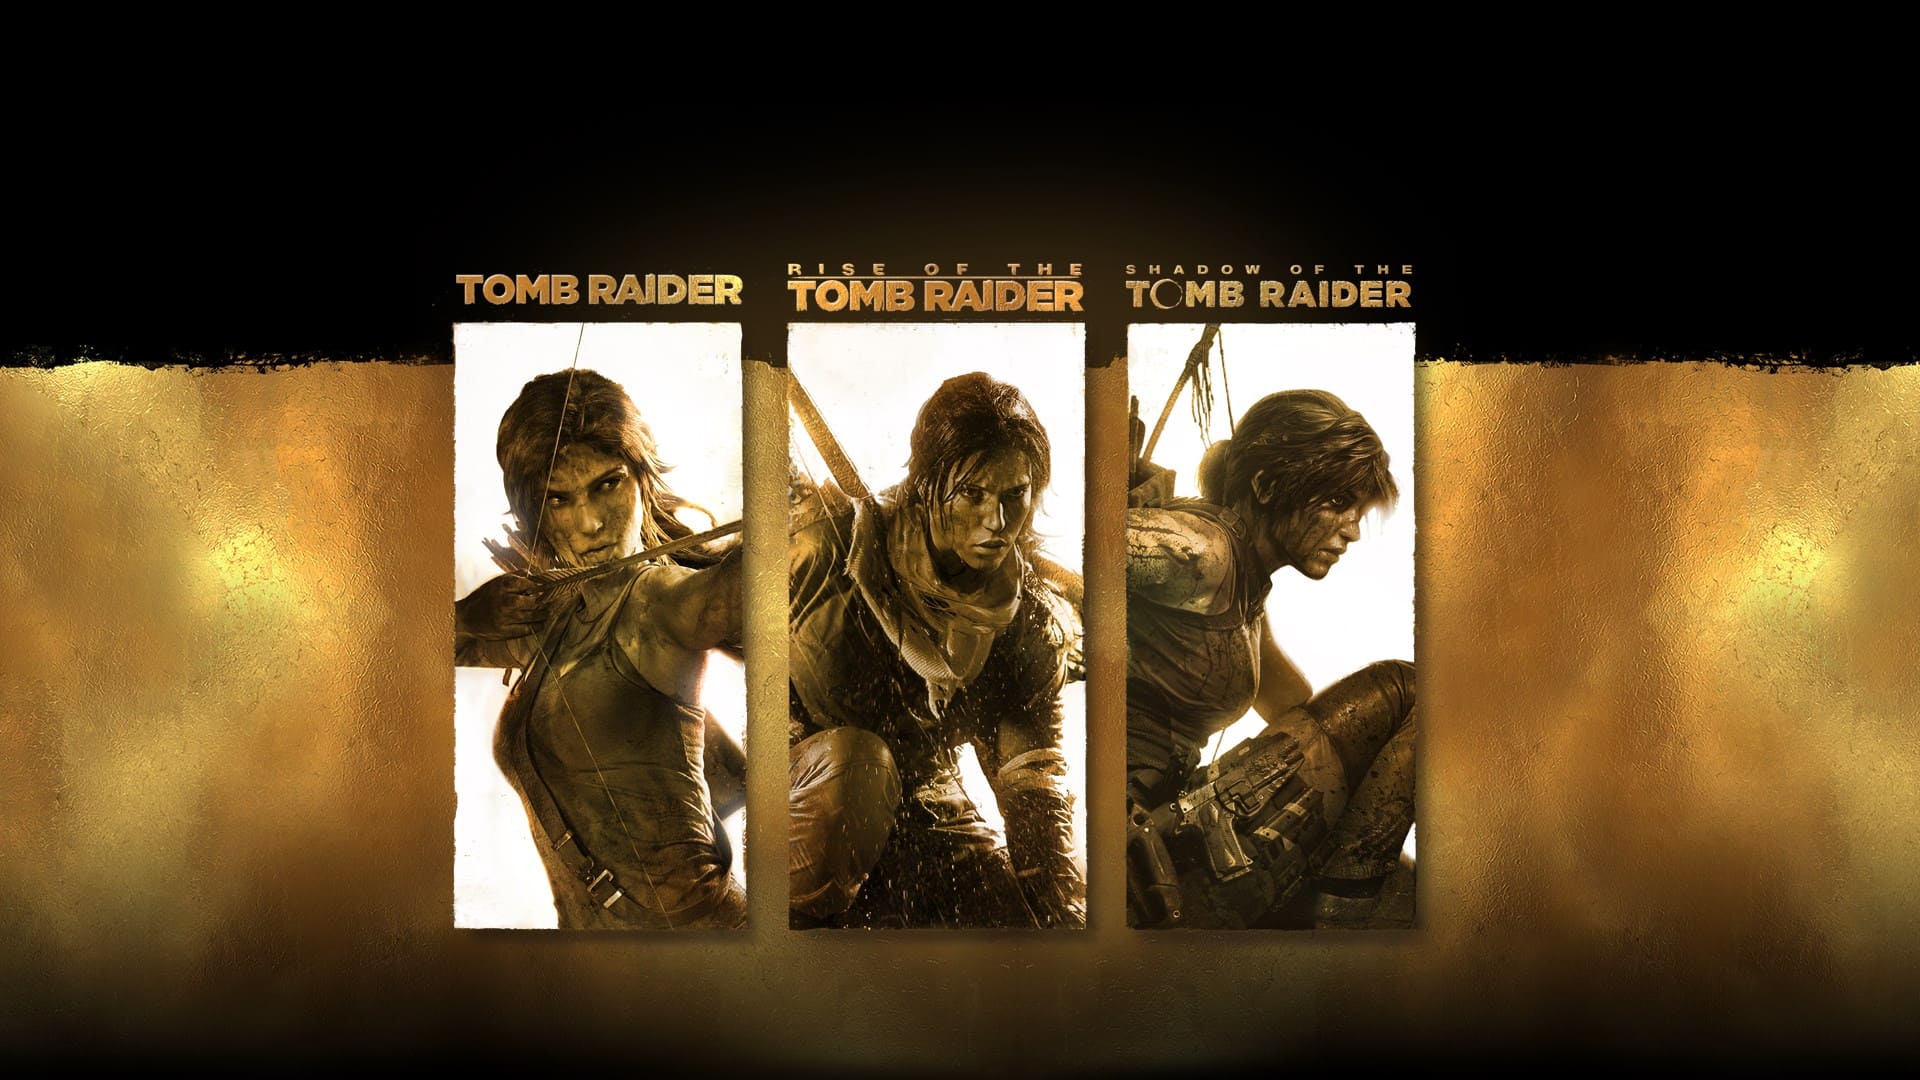 Trilogia Tomb Raider está de graça para PC - Canaltech